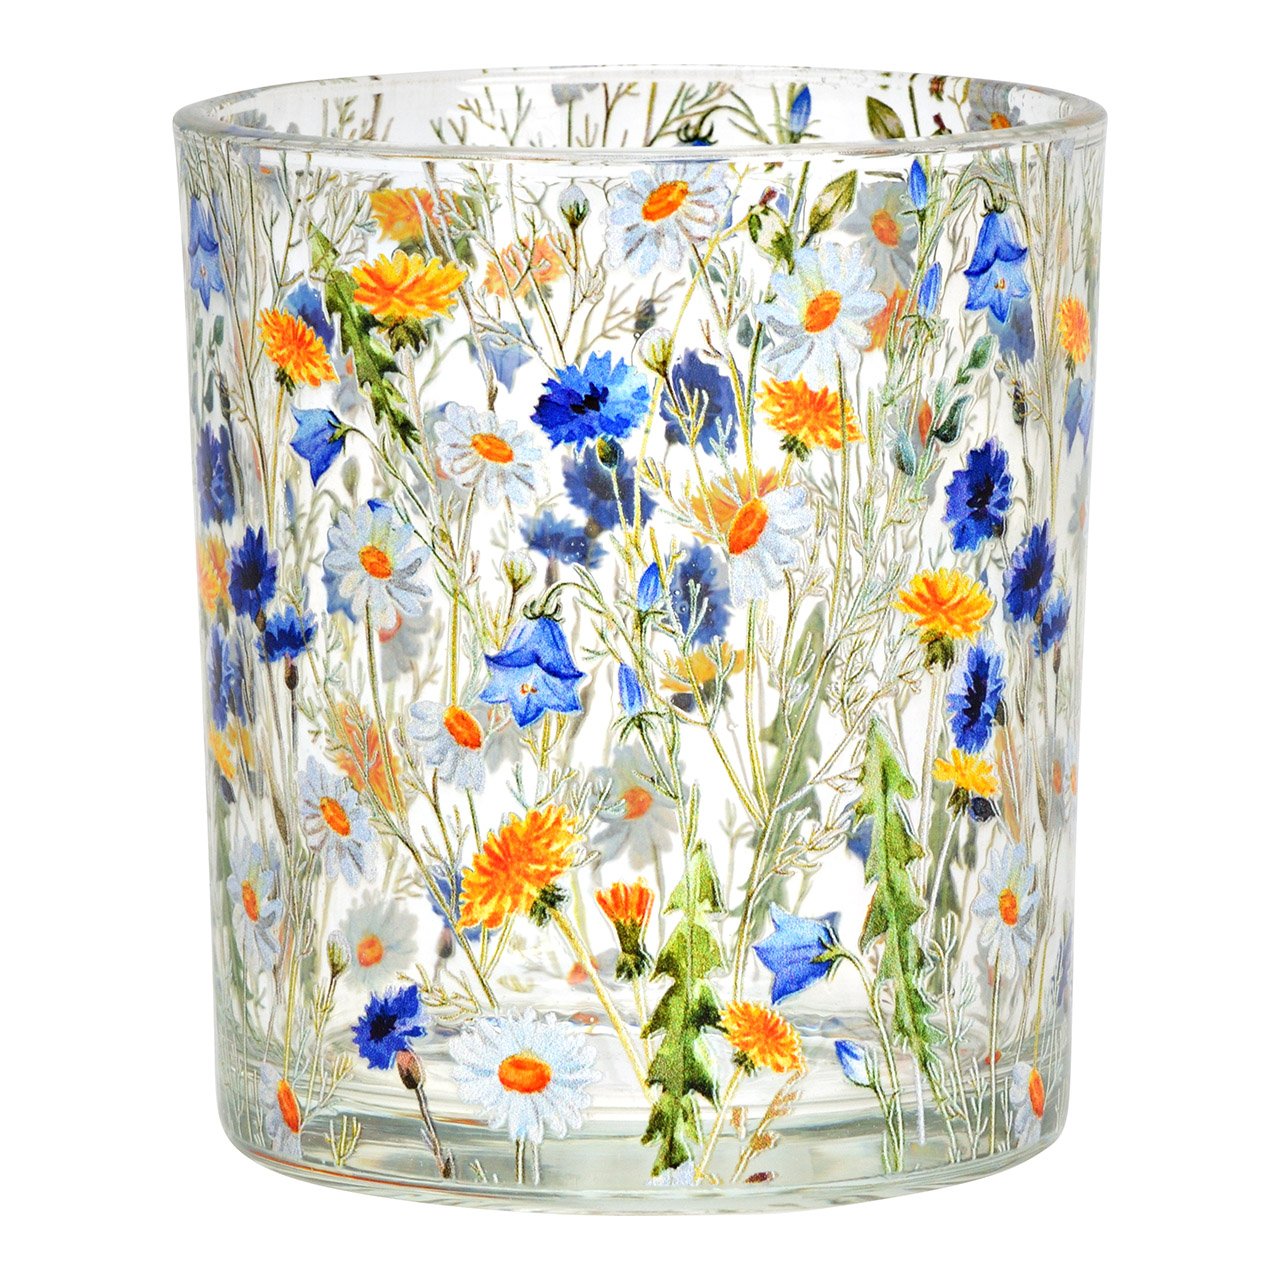 Windlicht Blumen Dekor aus Glas, Bunt (B/H/T) 9x10x9cm